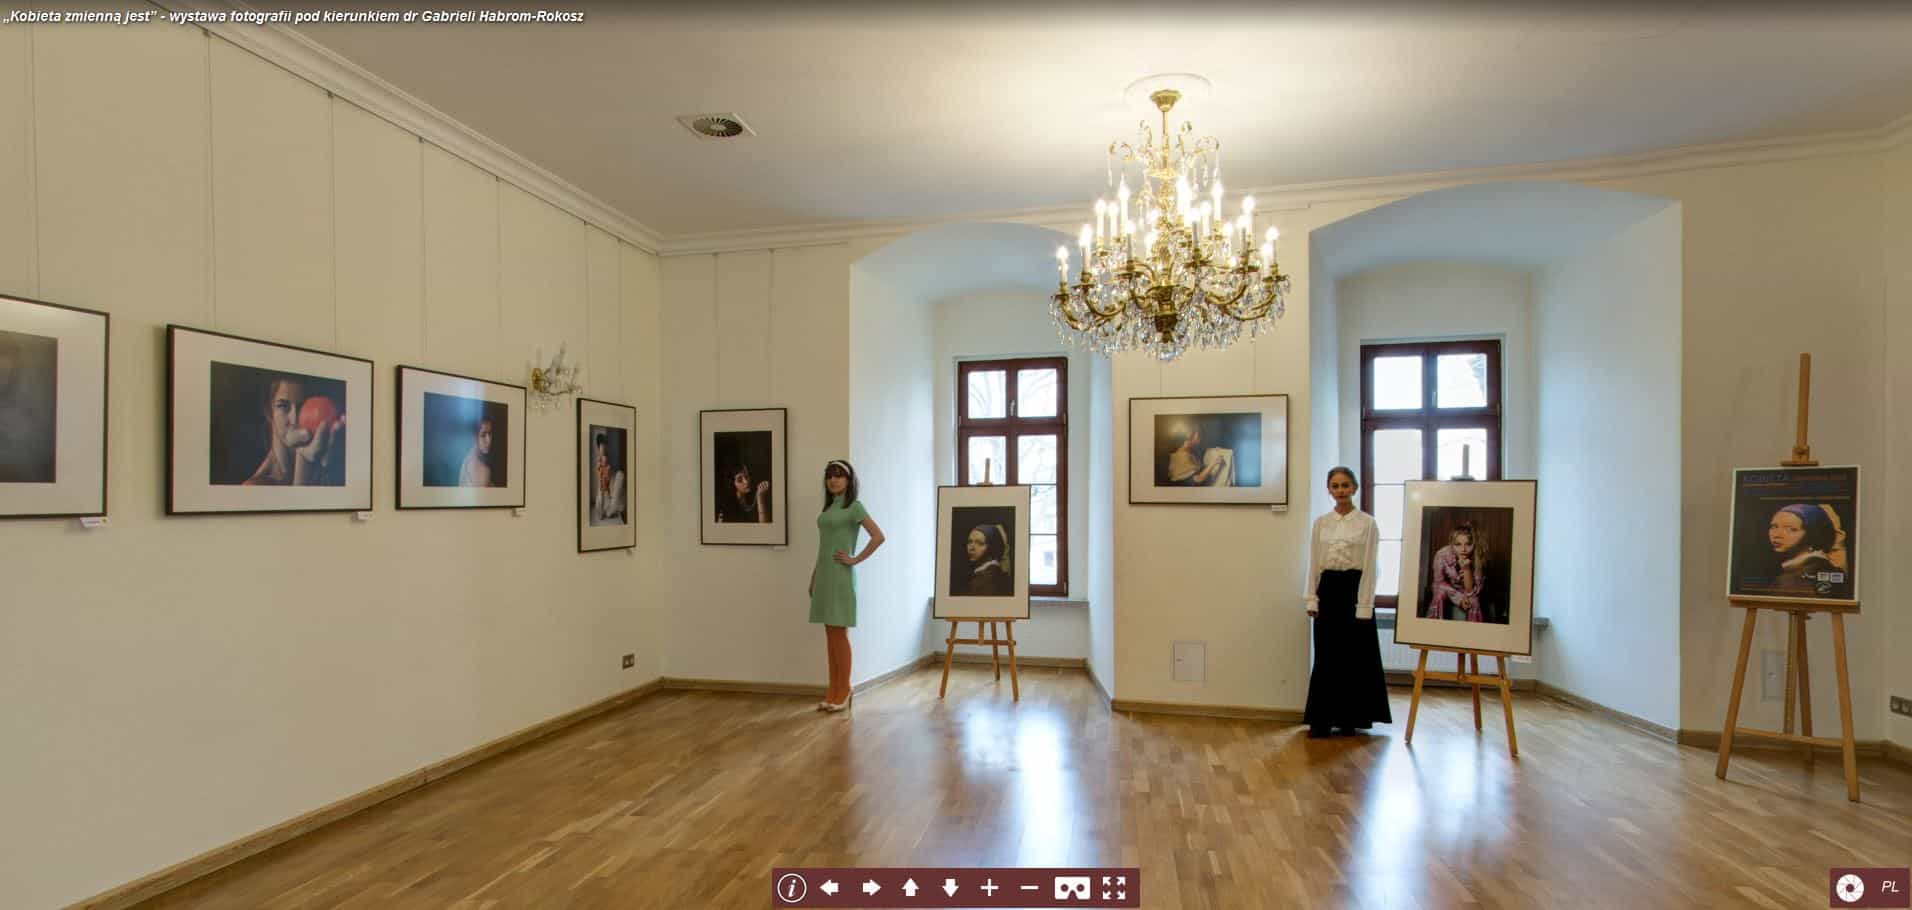 Zamek Piastowski w Raciborzu zaprasza na wirtualny spacer